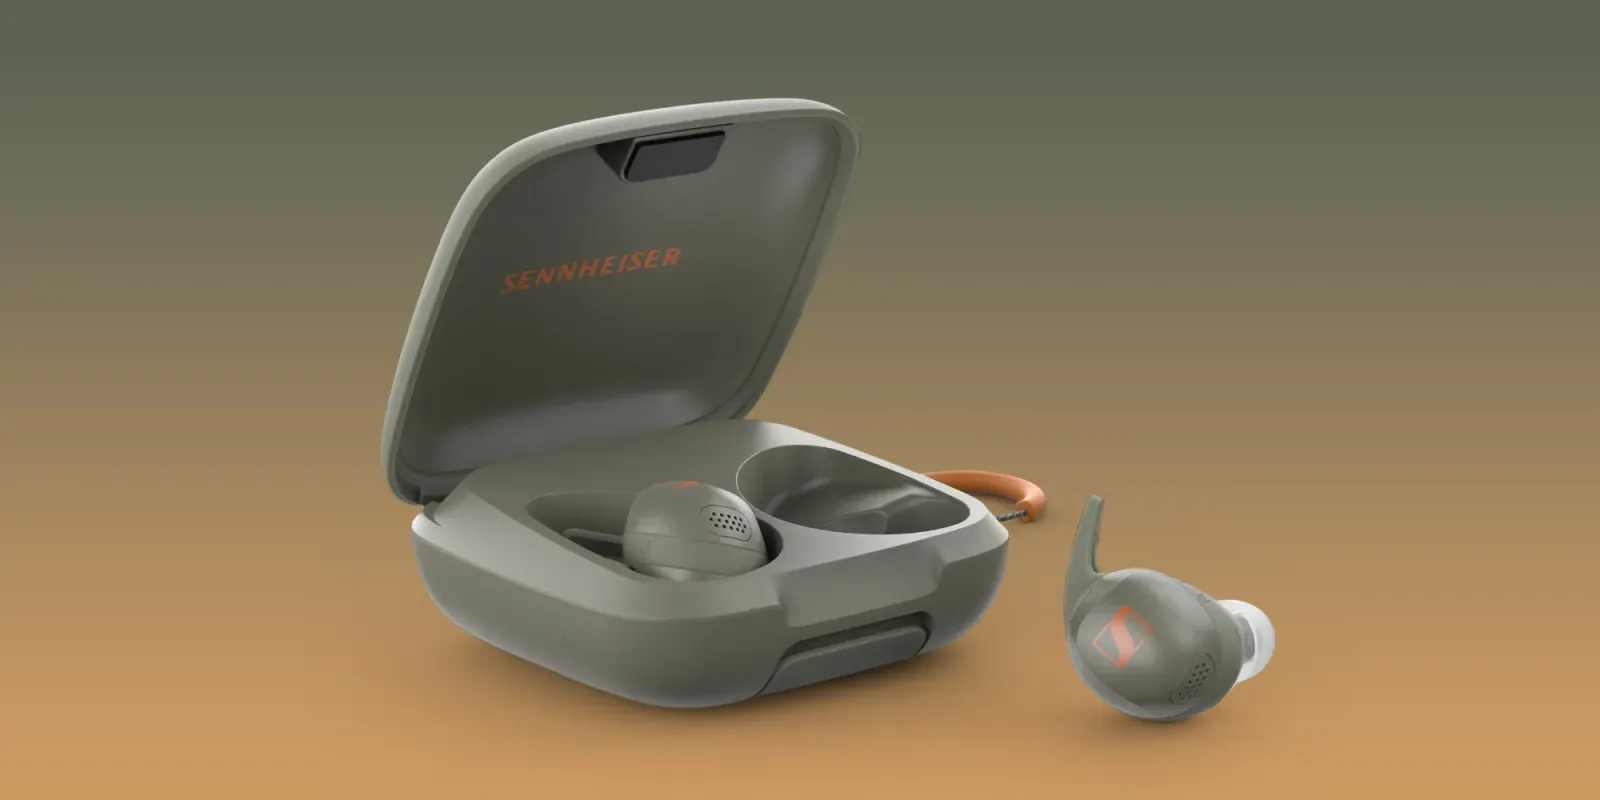 Sennheiser ra mắt tai nghe không dây Momentum Sport tích hợp cảm biến nhịp tim và nhiệt độ cơ thể